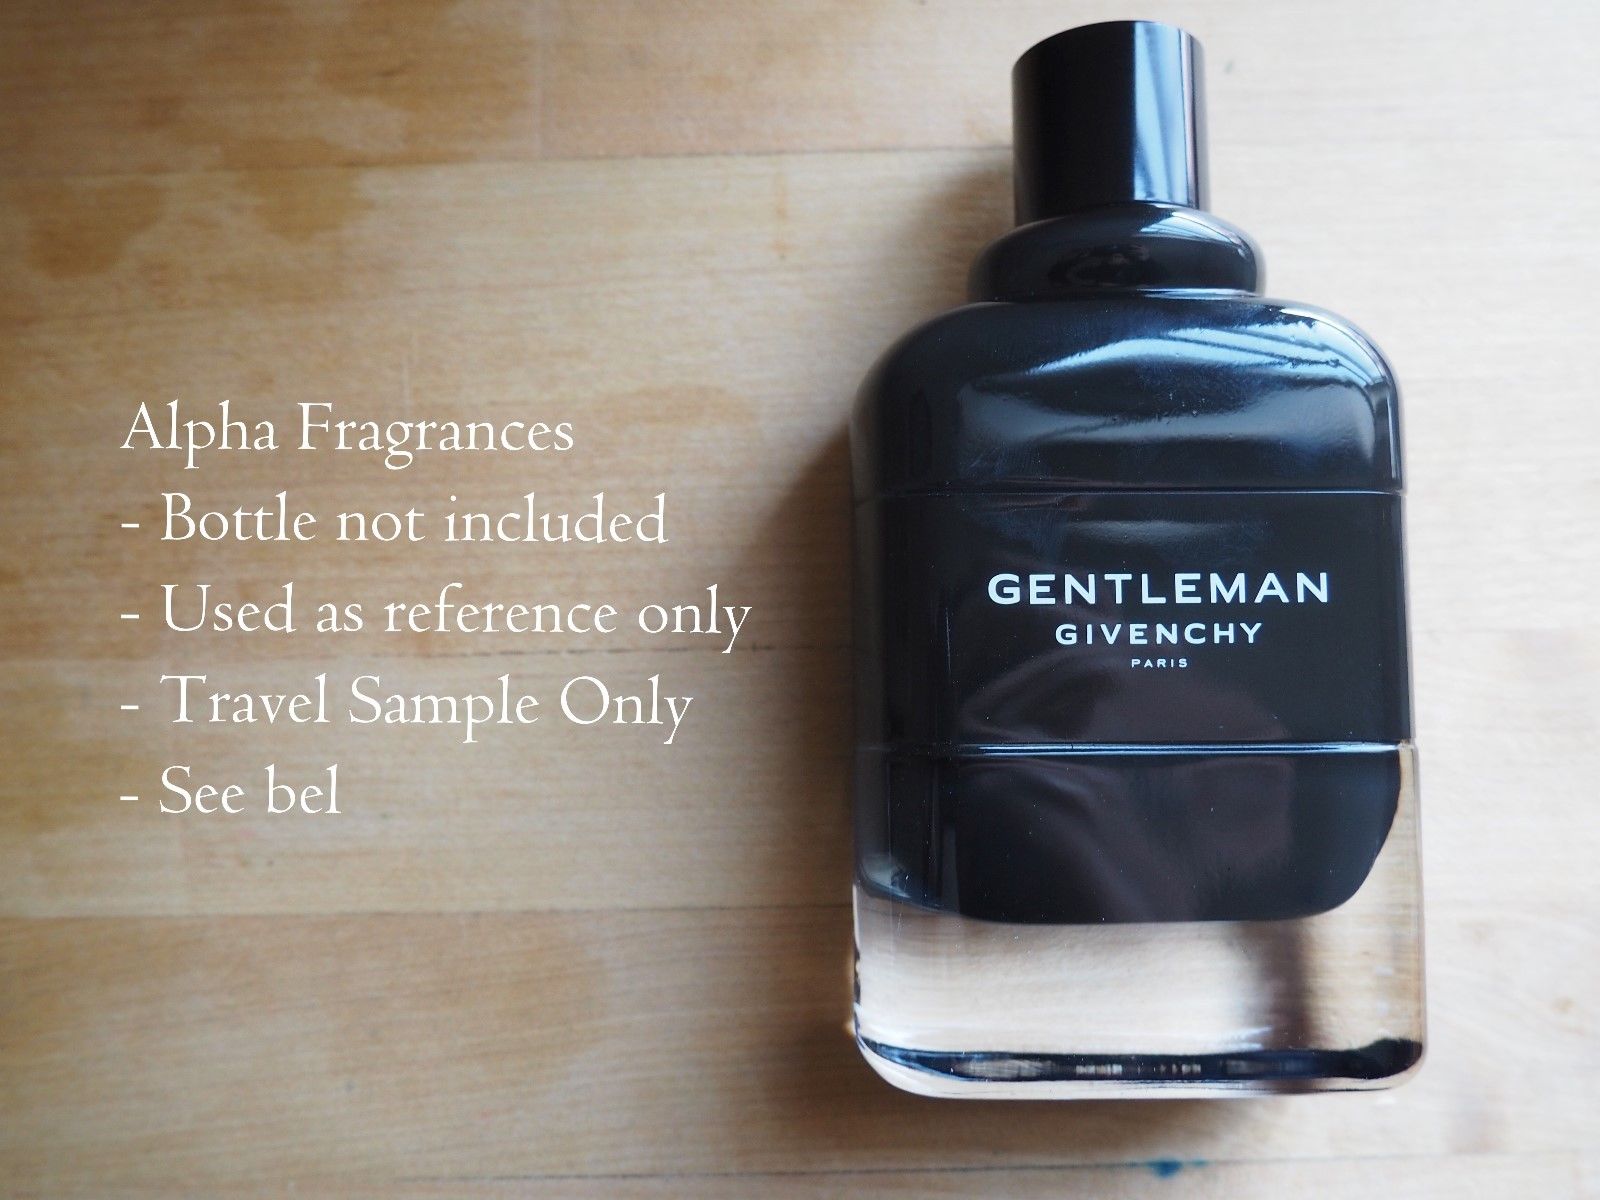 gentleman givenchy eau de parfum price